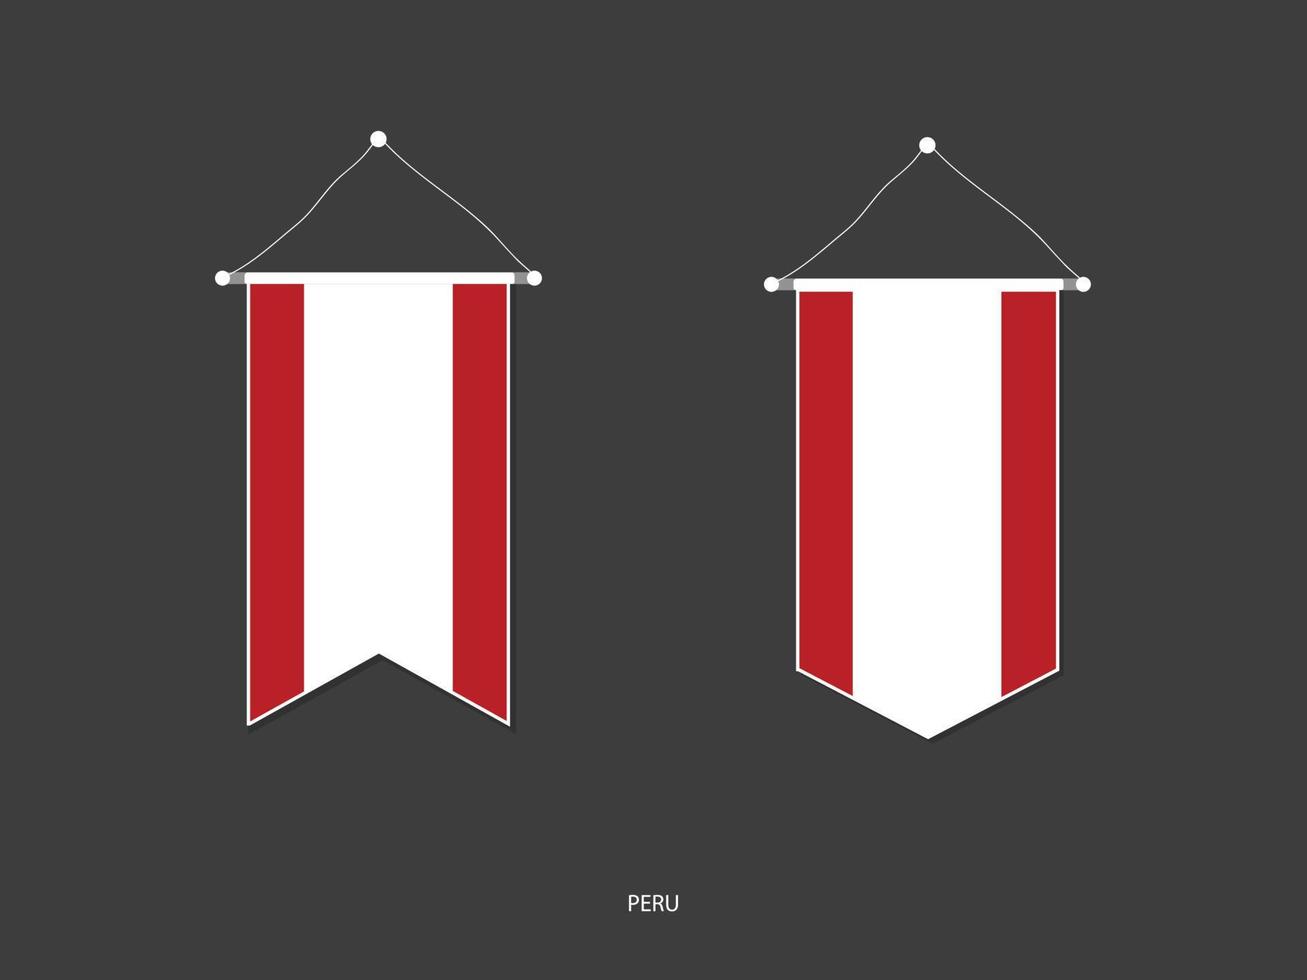 drapeau du pérou sous diverses formes, vecteur de fanion de drapeau de football, illustration vectorielle.